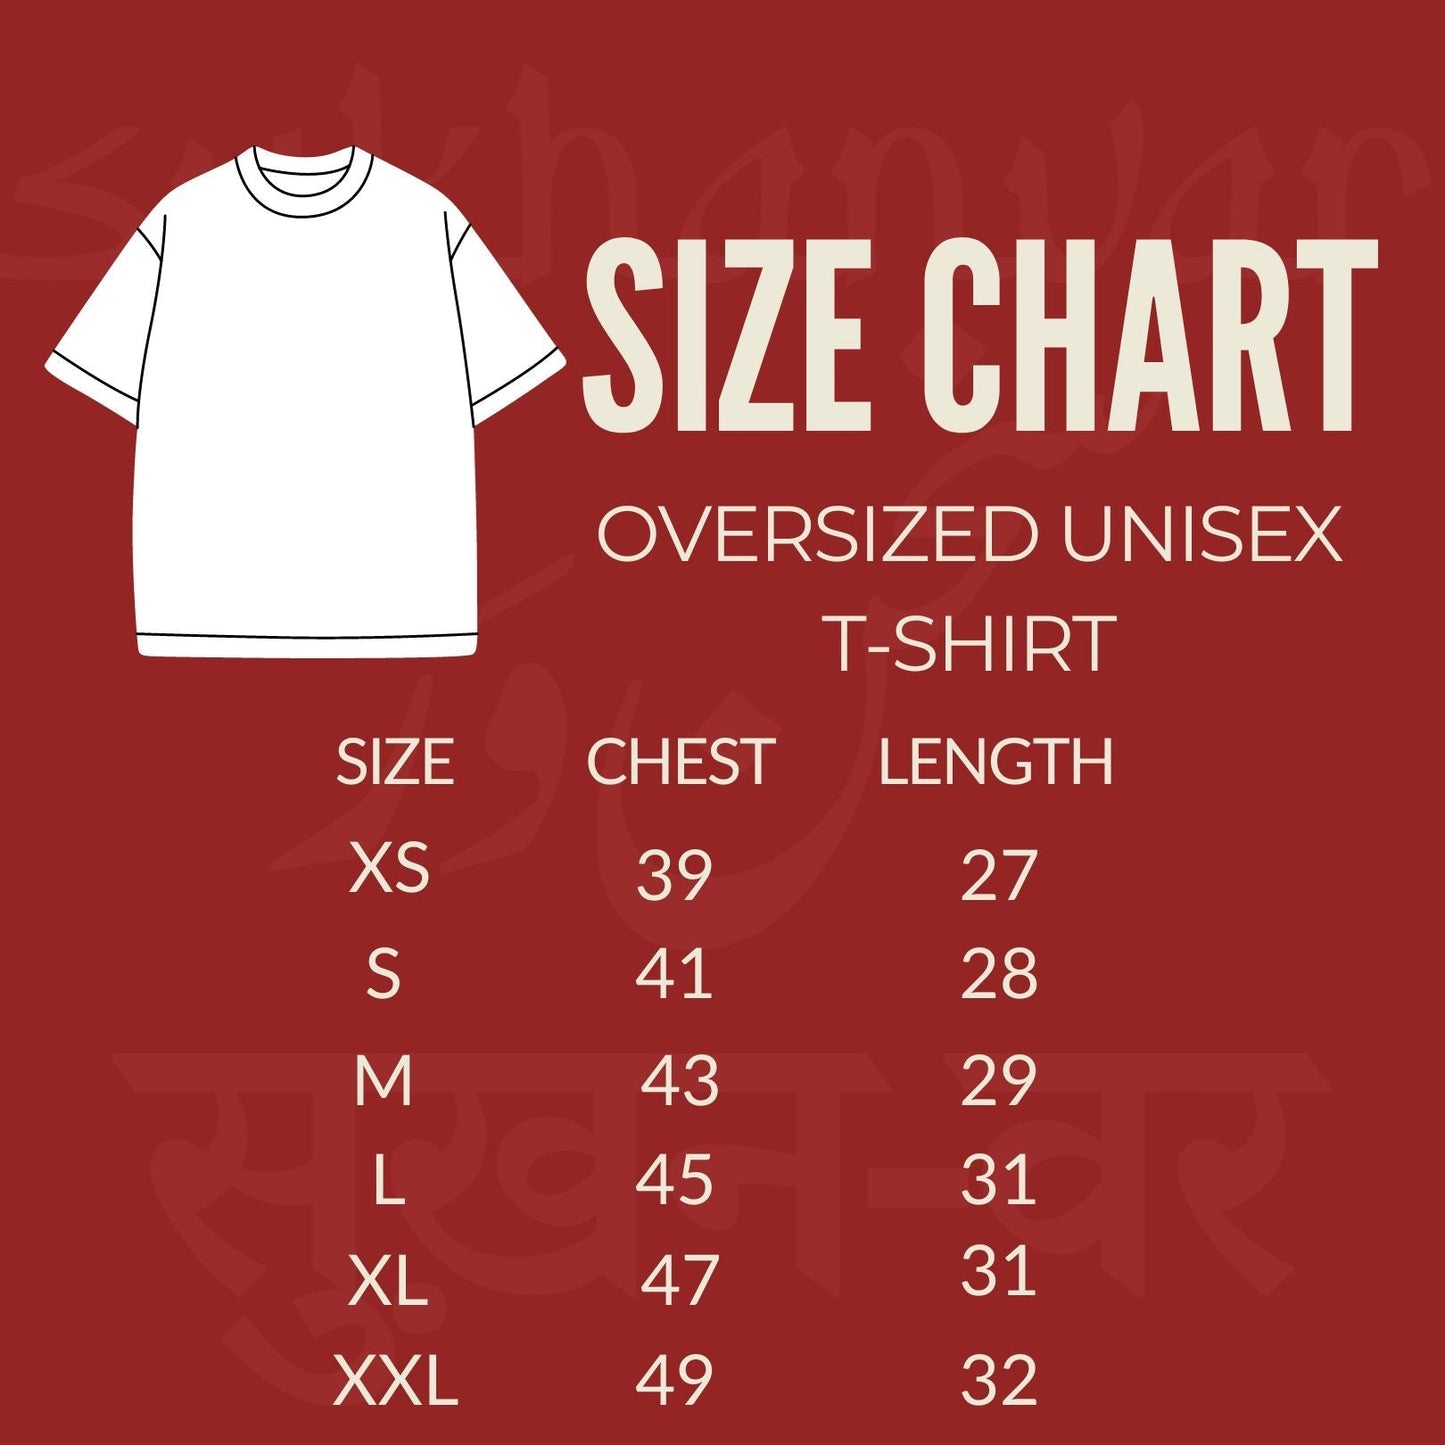 Ishq oversized unisex tshirt, urdu tshirt. sabr oversized tshirt by sukhanvar. urdu tshirt